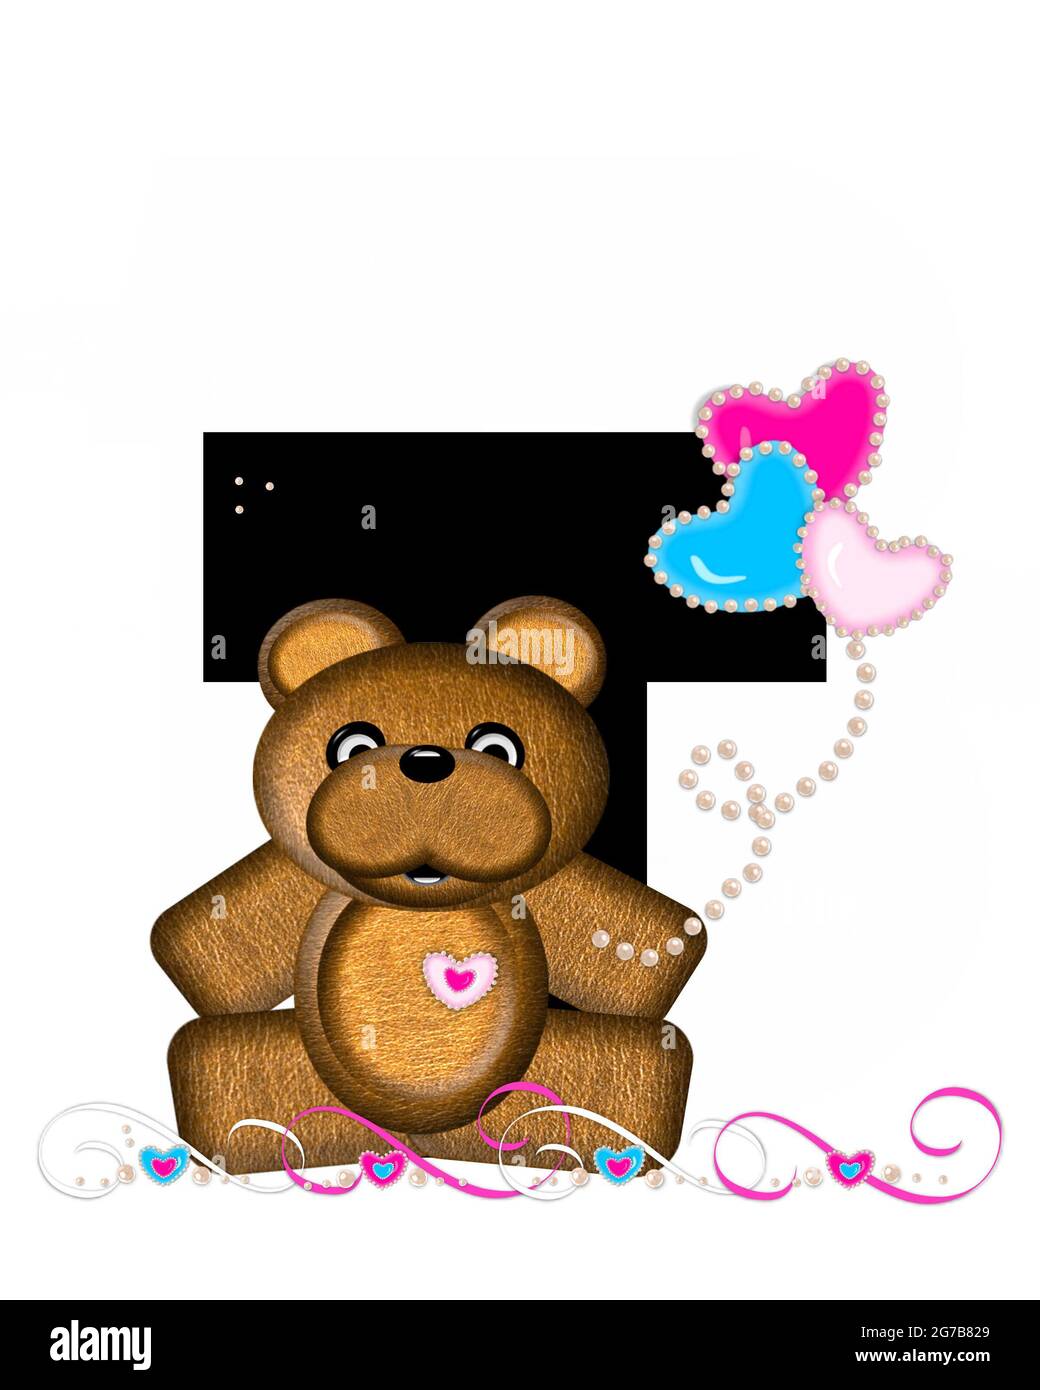 La lettre T, dans l'ensemble d'alphabet 'Teddy Valentine's Cutie', est noire. L'ours en peluche brun contient des ballons en forme de cœur en rose et en bleu. Corde de poire Banque D'Images